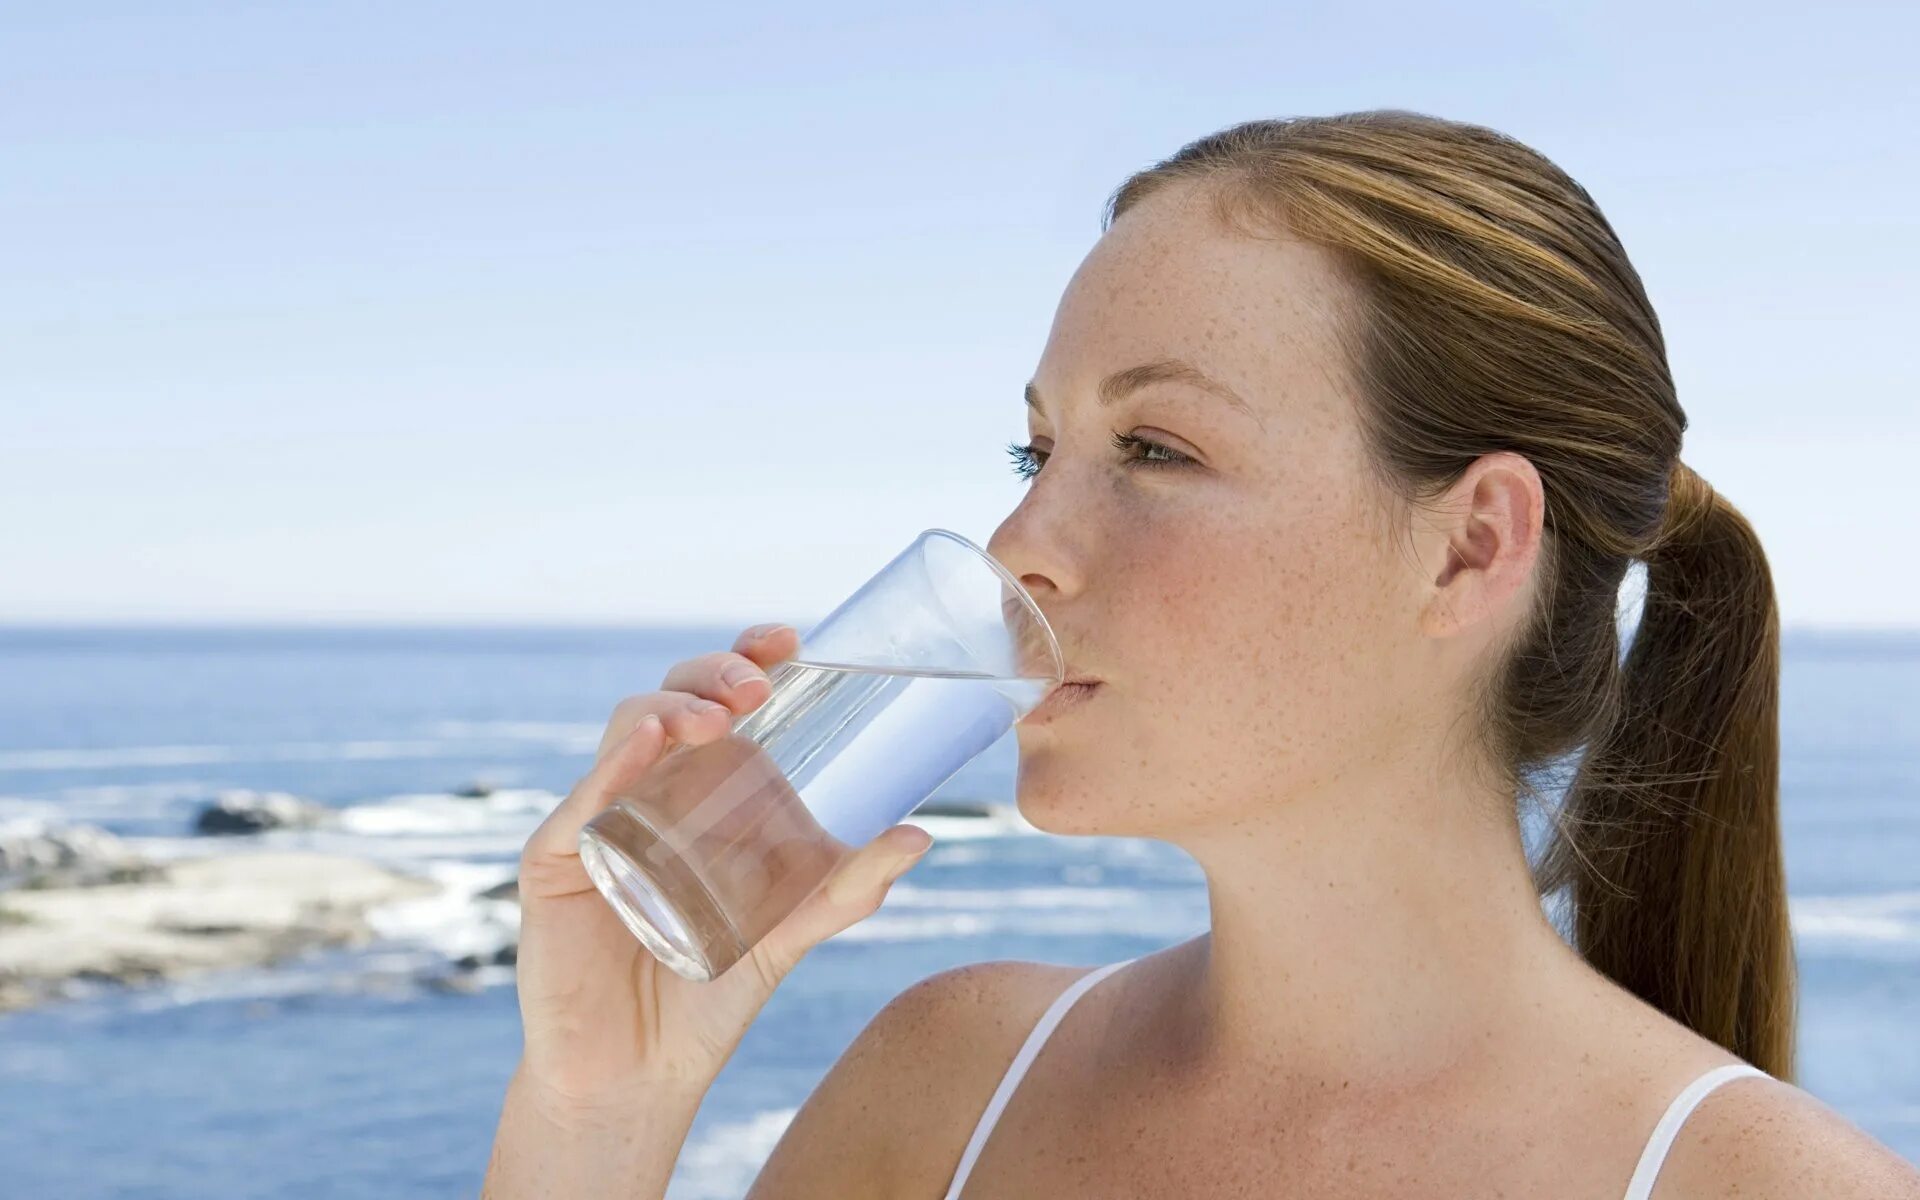 Пить подсоленную воду. Пить воду. Вода и человек. Питьевая вода. Человек пьет воду.